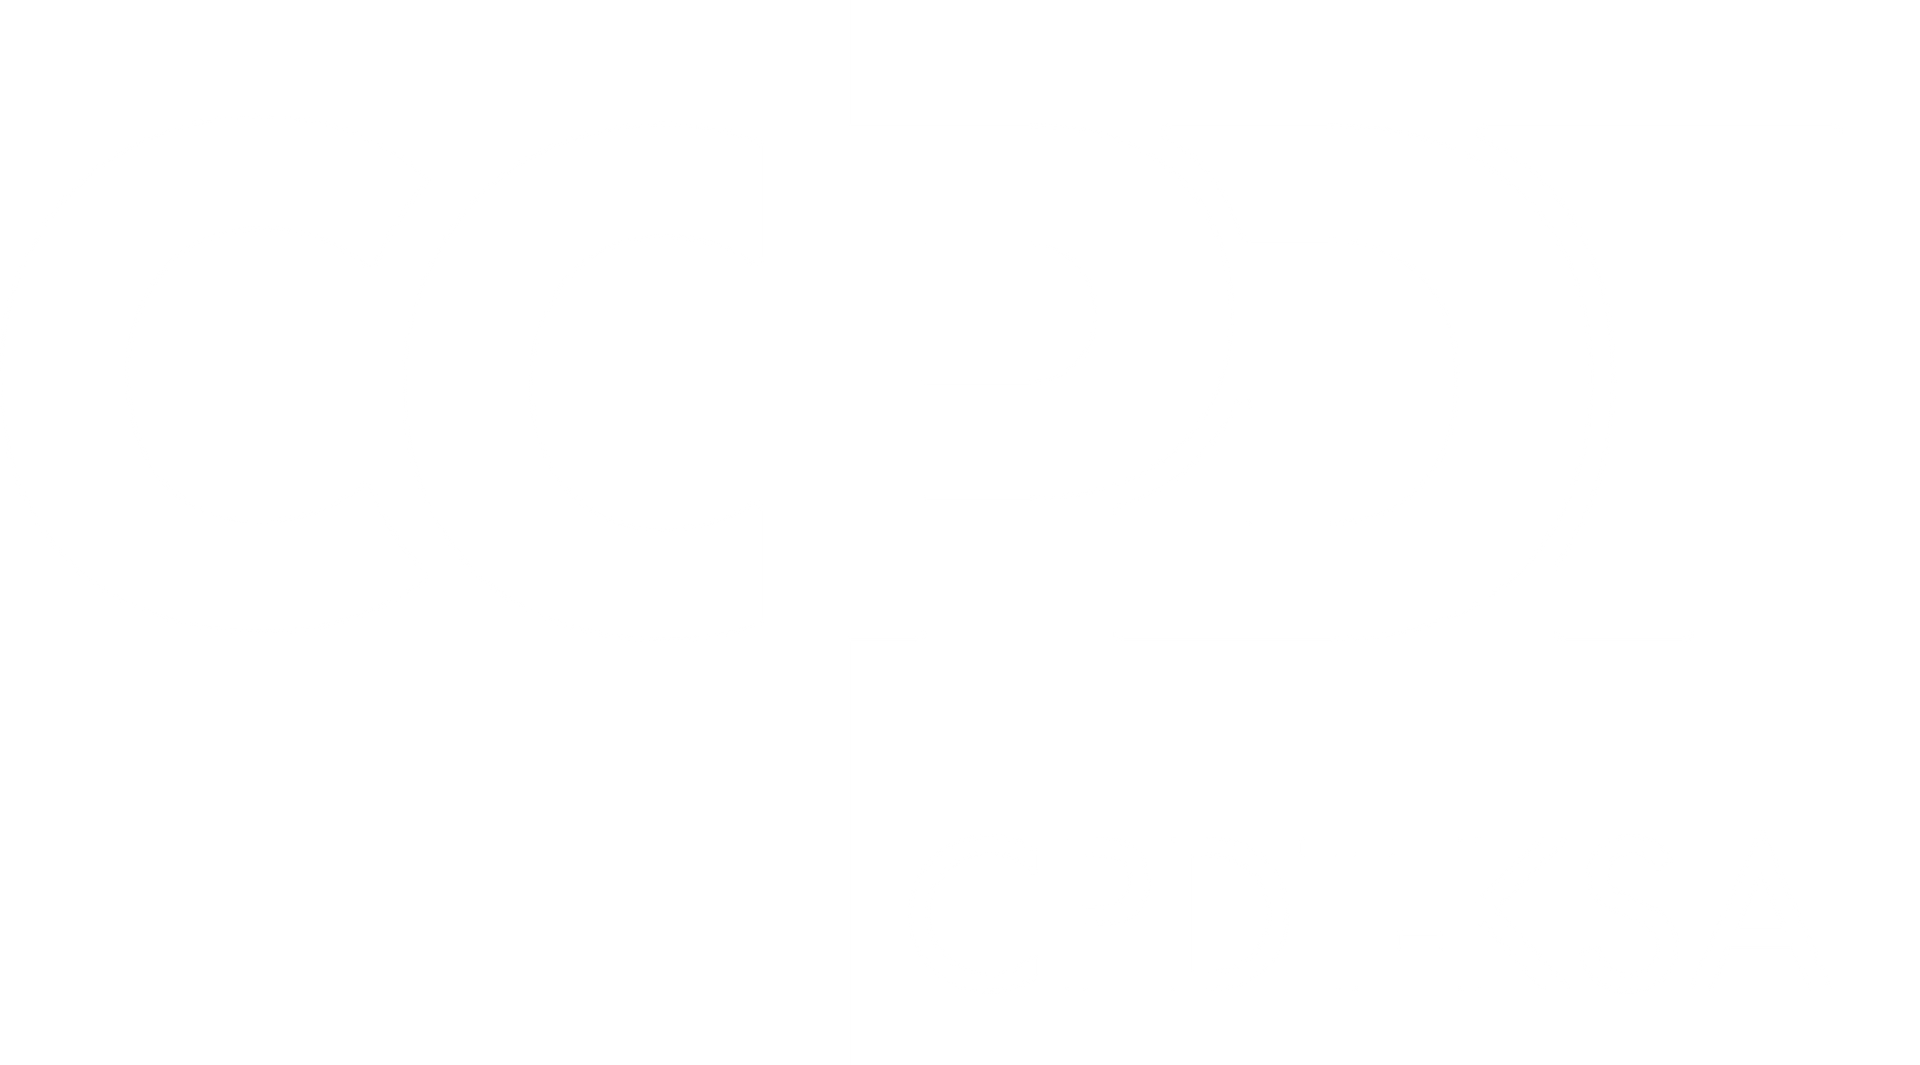 CCPDT - CPDT-KSA